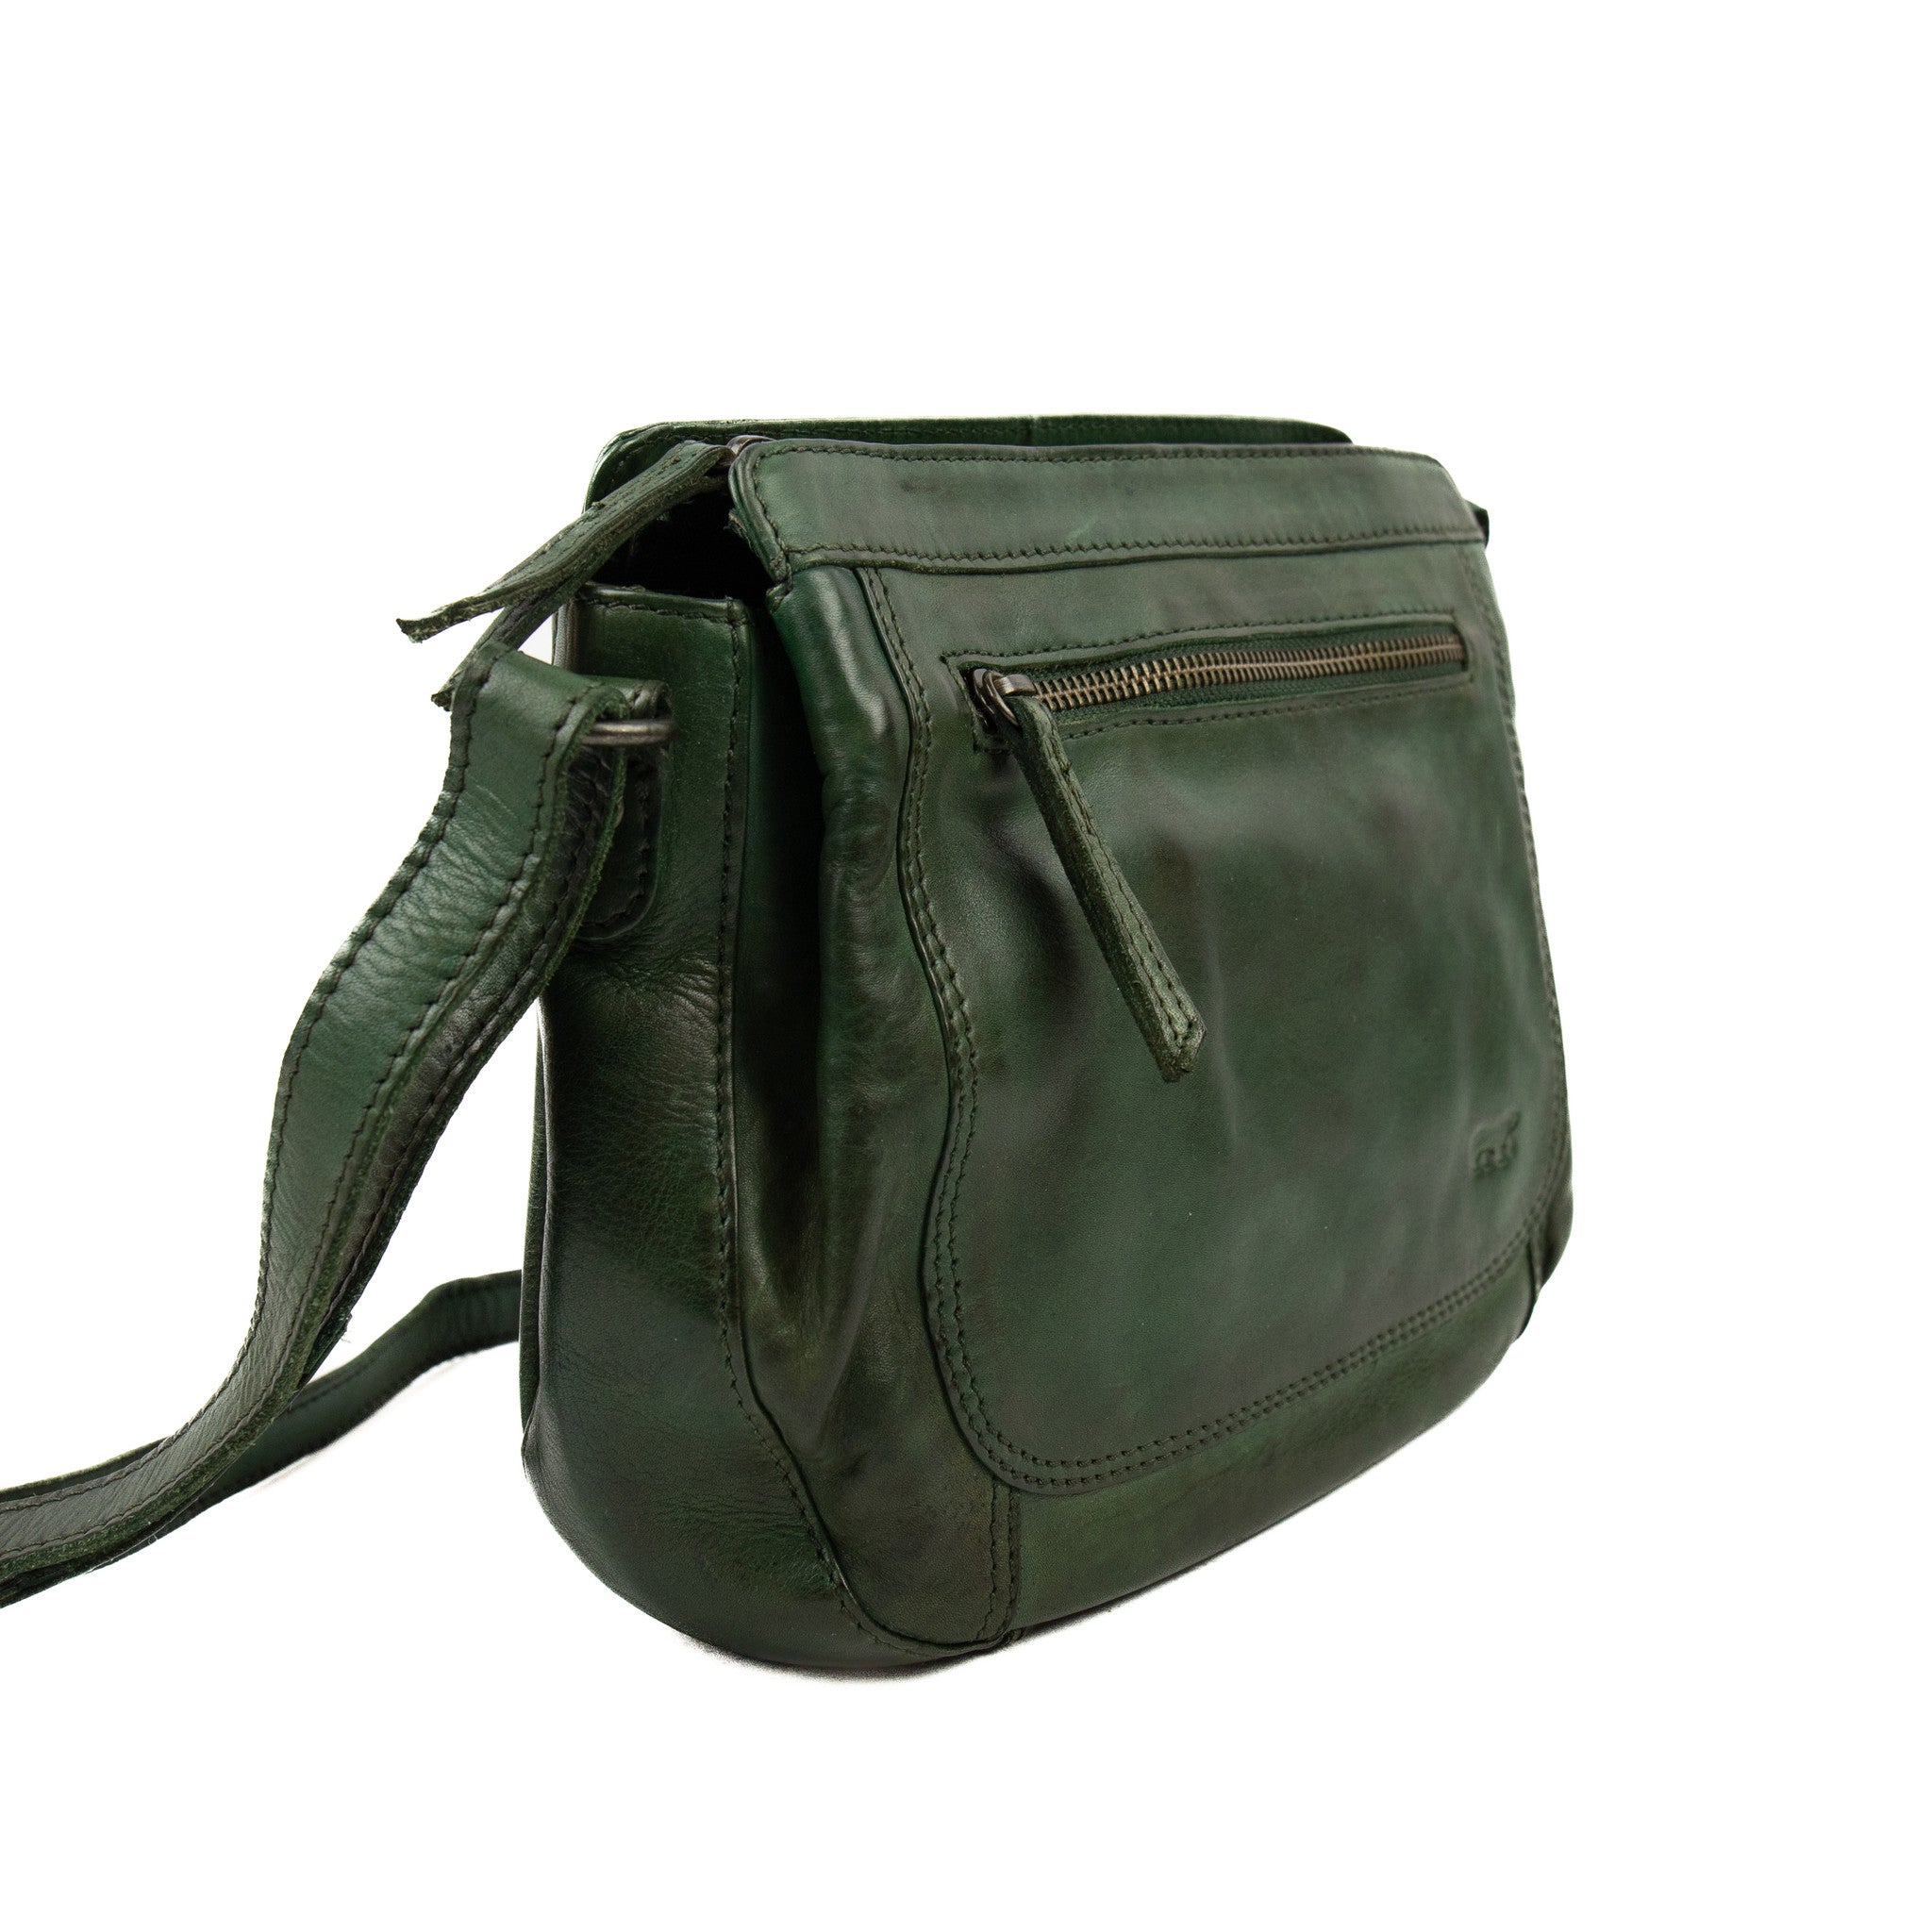 Shoulder bag 'Miley' green - CL 41707